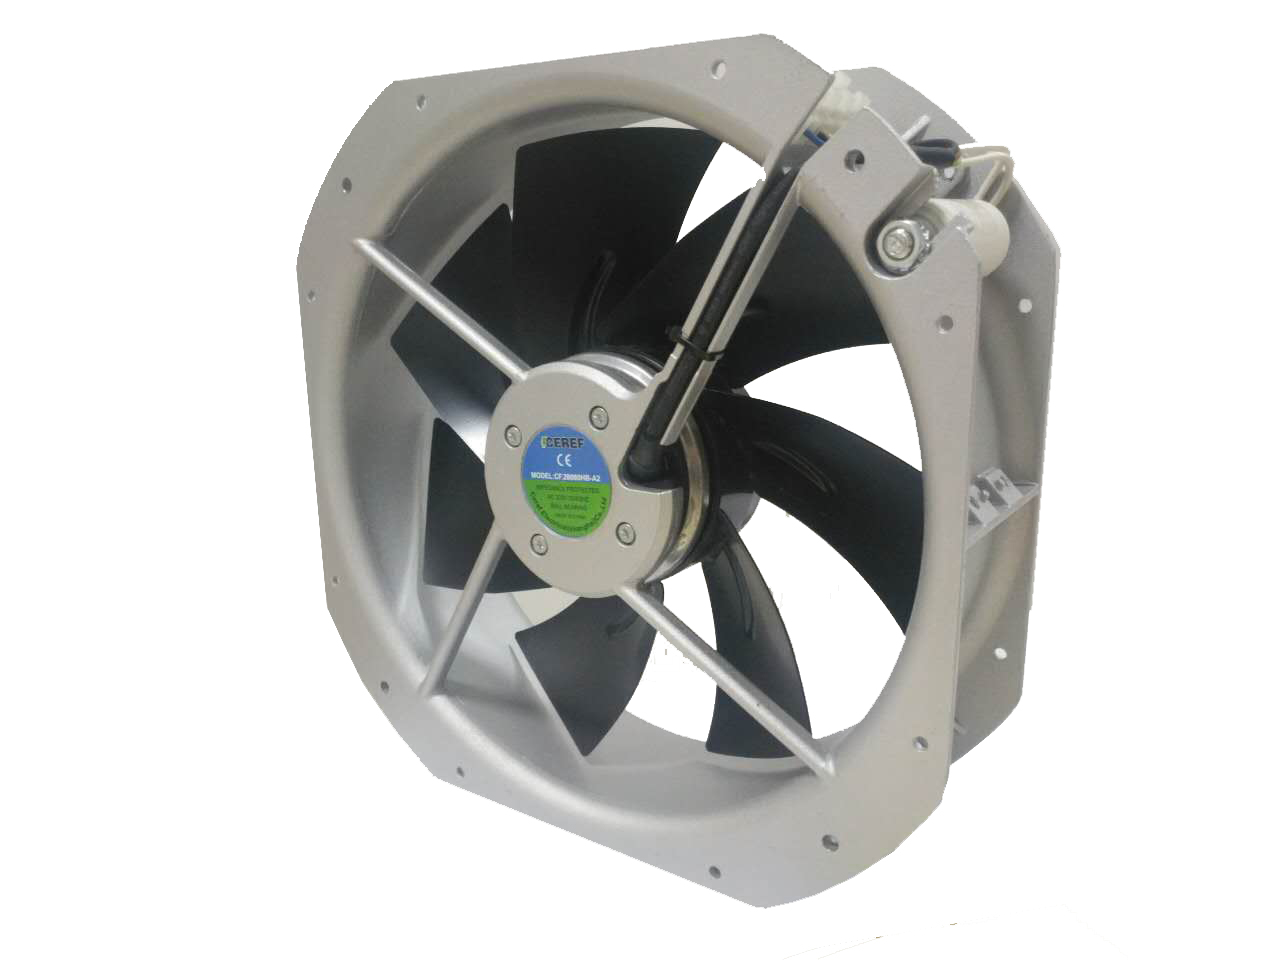 大风压风机 消毒柜散热风机 氢能设备风扇 CF.28080HB-A2 舍利弗CEREF